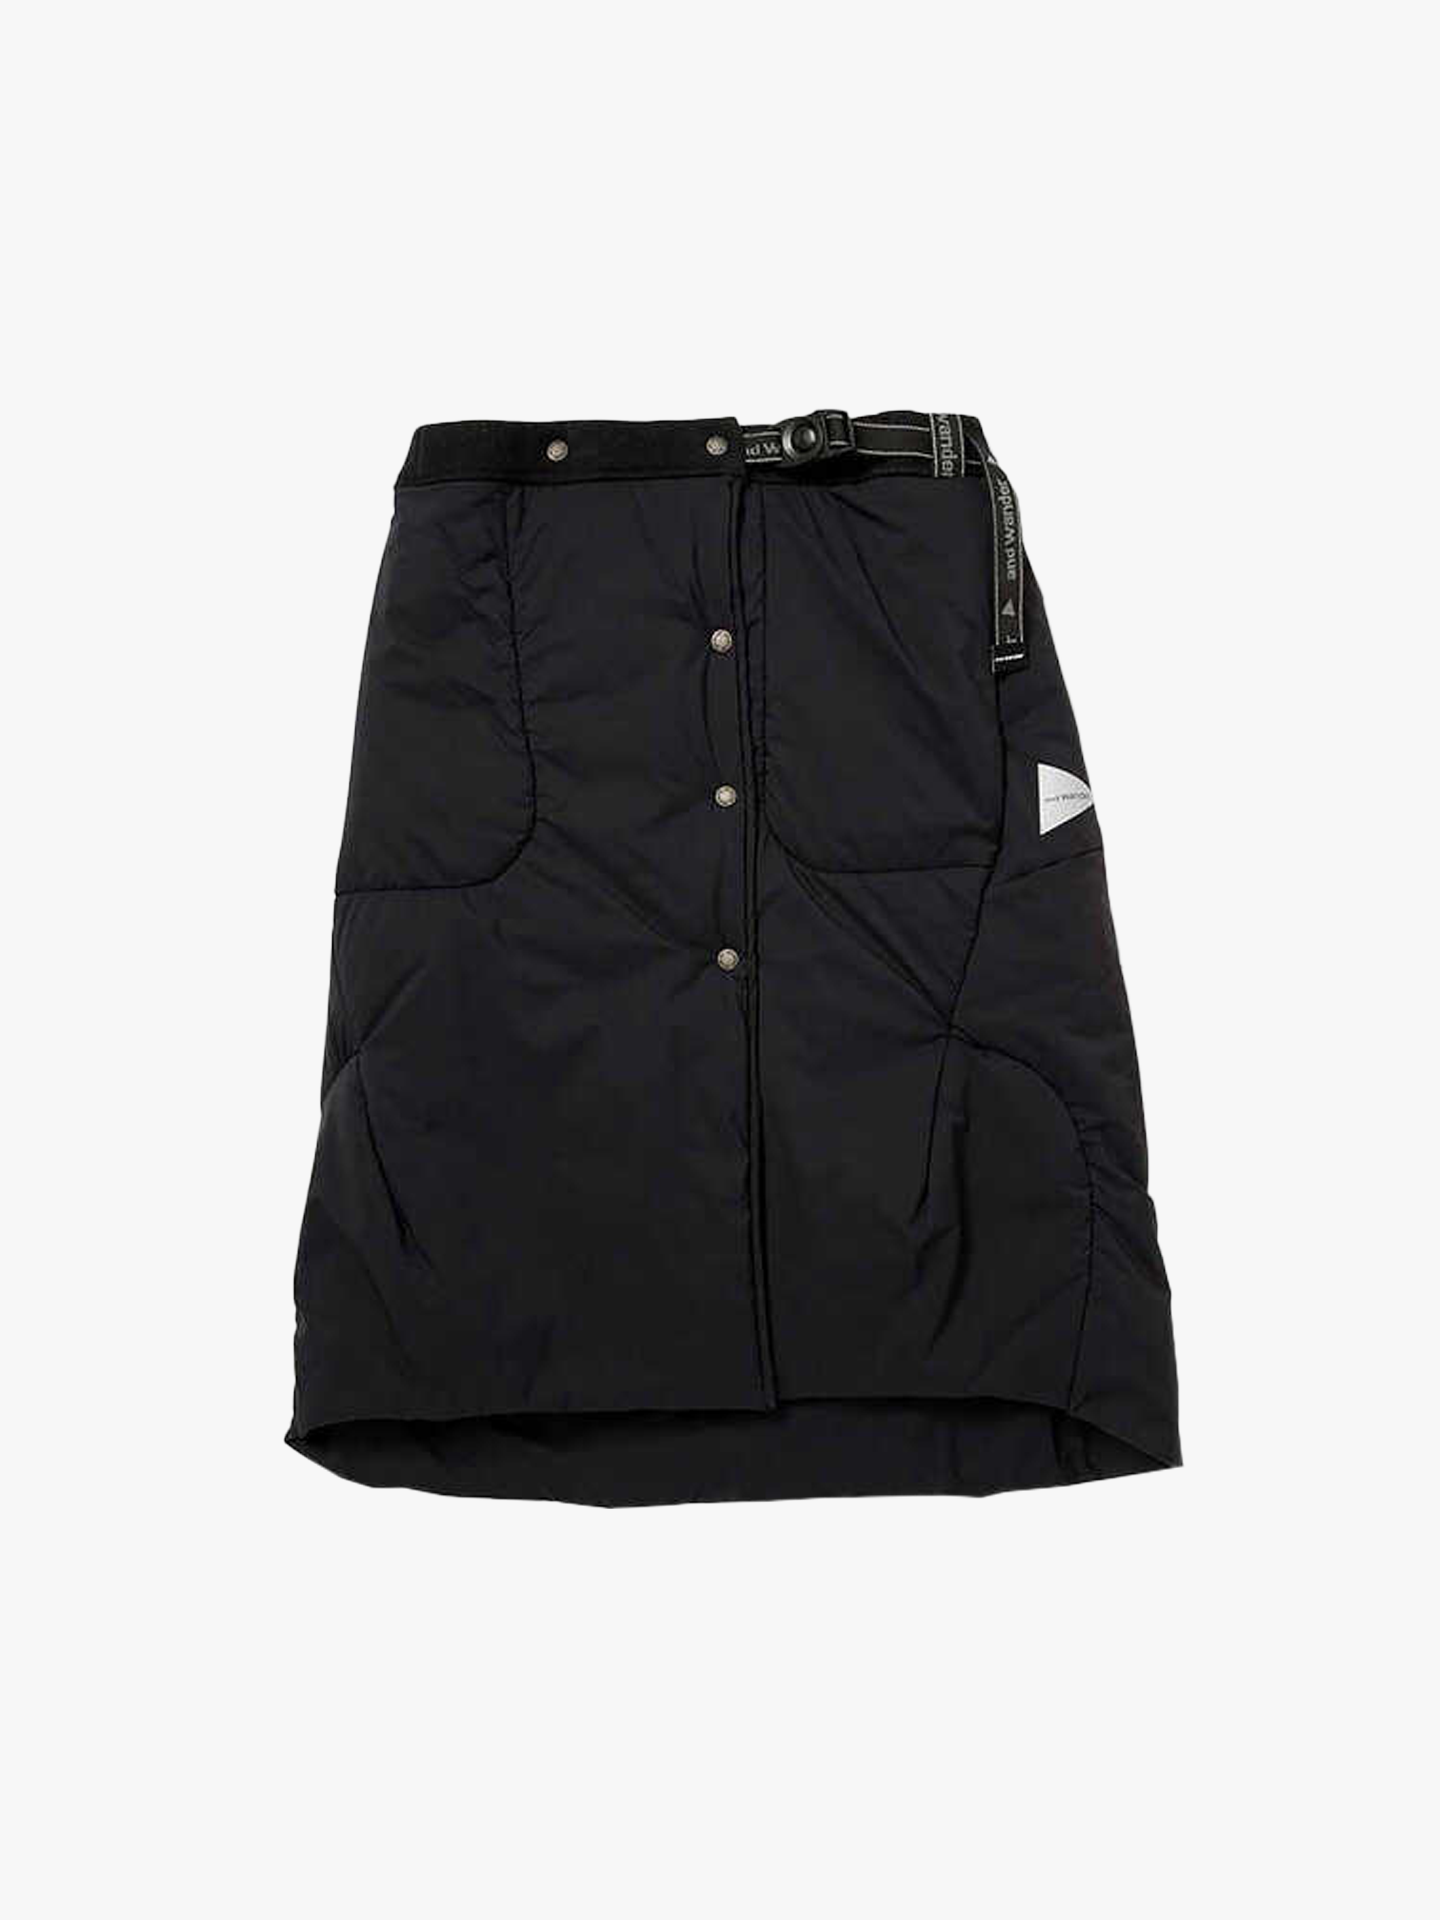 Top fleece skirt Юбка, 100% полиэстер, вставка-нейлон, размер S, черный